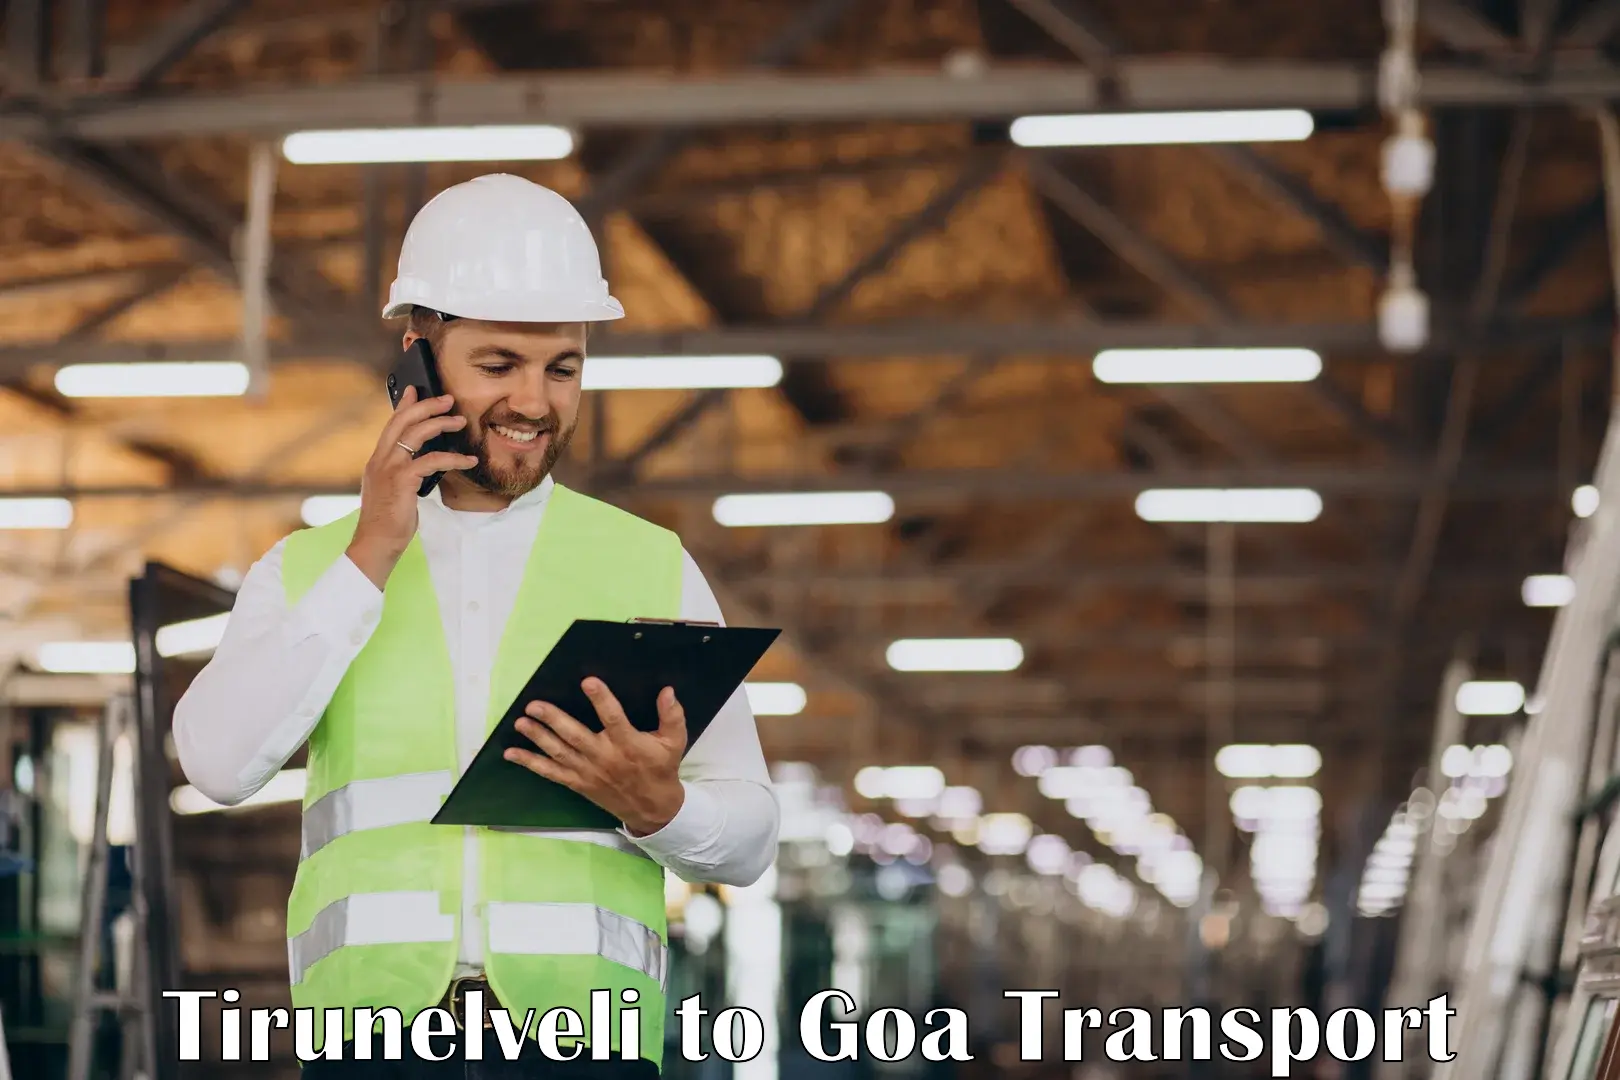 Nearest transport service Tirunelveli to IIT Goa